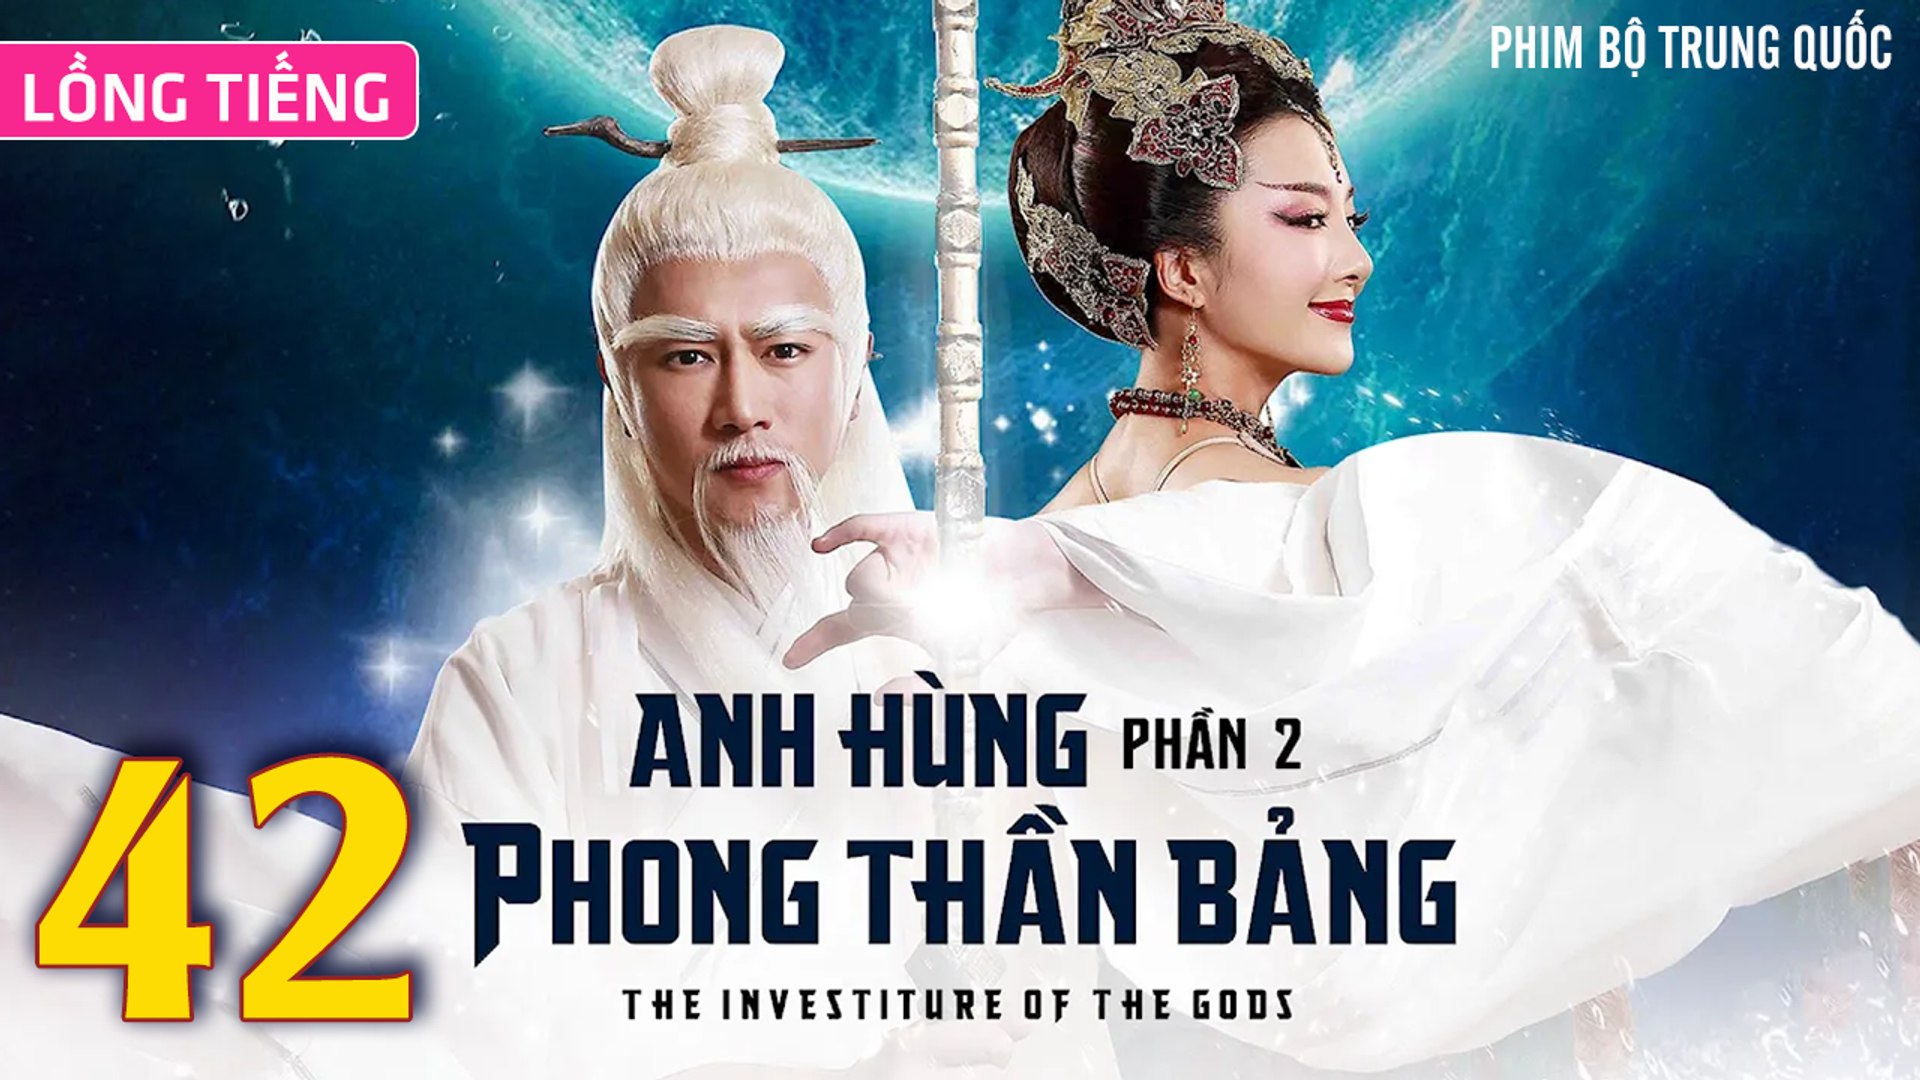 Phim Bộ Hay: ANH HÙNG PHONG THẦN BẢNG 2 - Tập 42 (Lồng Tiếng) | Phim Bộ Trung Quốc Hay Nhất 2023